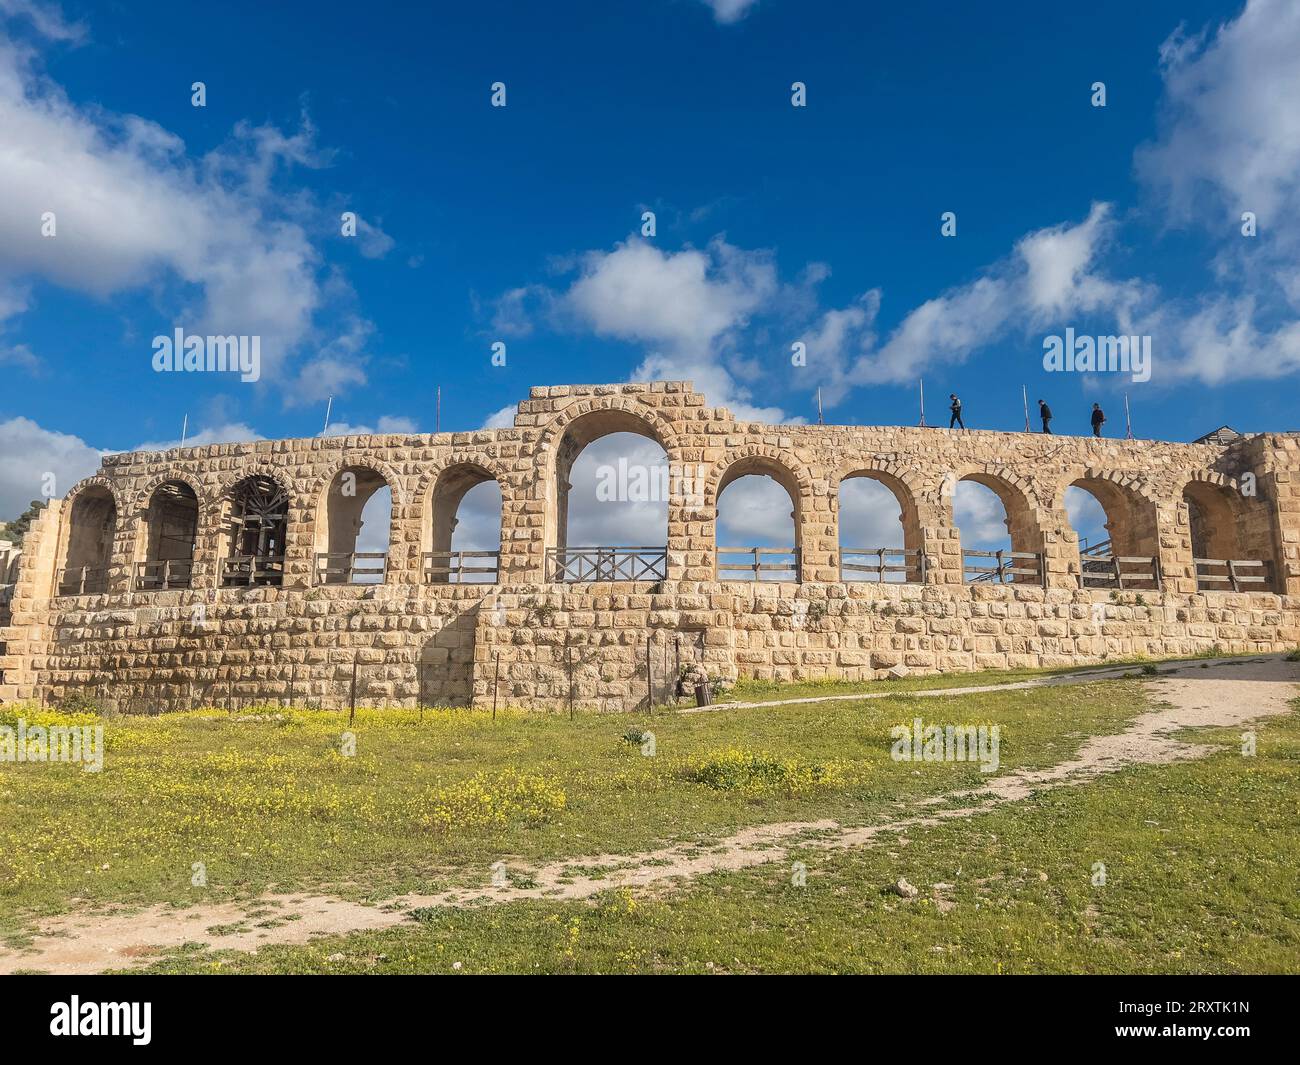 Entrée de l'hippodrome de Jerash, qui aurait été fondé en 331 av. J.-C. par Alexandre le Grand, Jerash, Jordanie, Moyen-Orient Banque D'Images